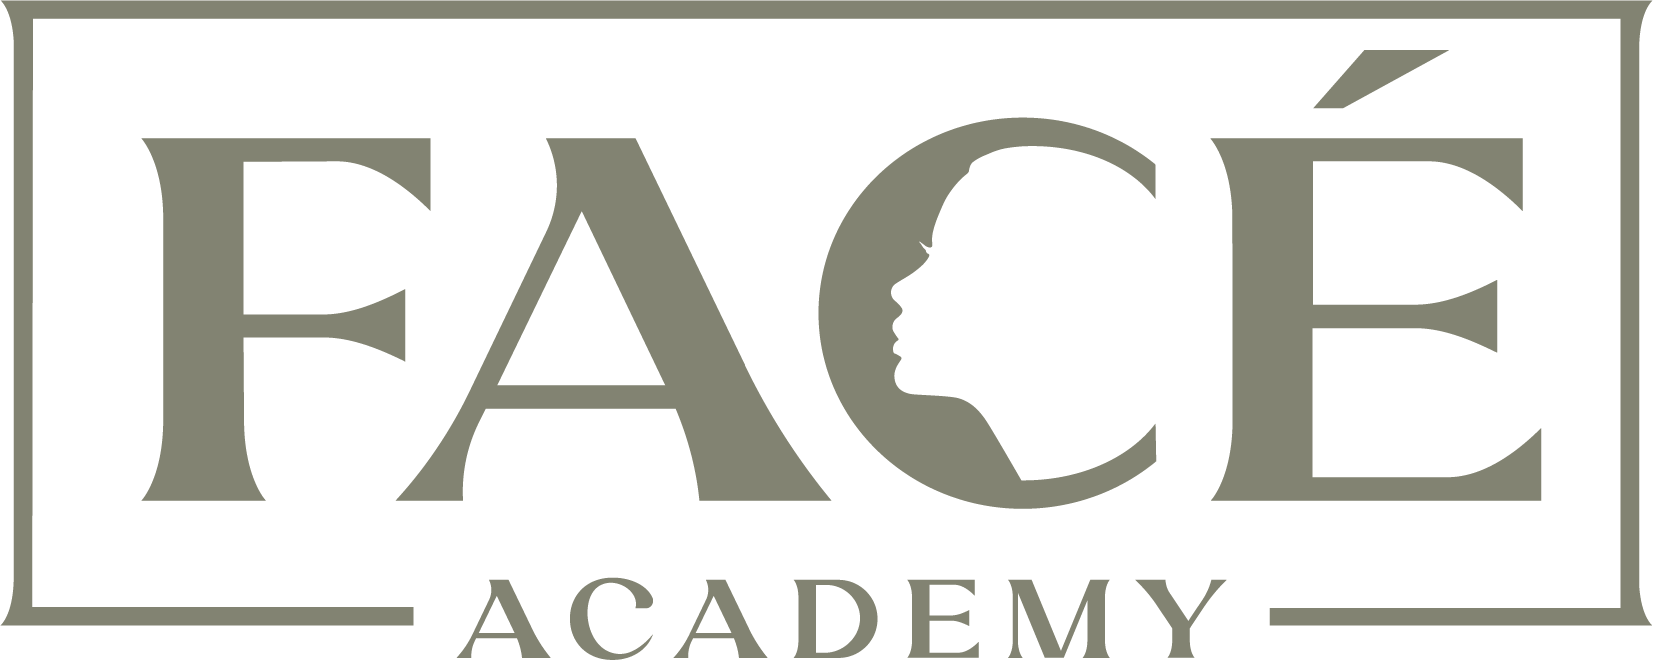 Face Academy